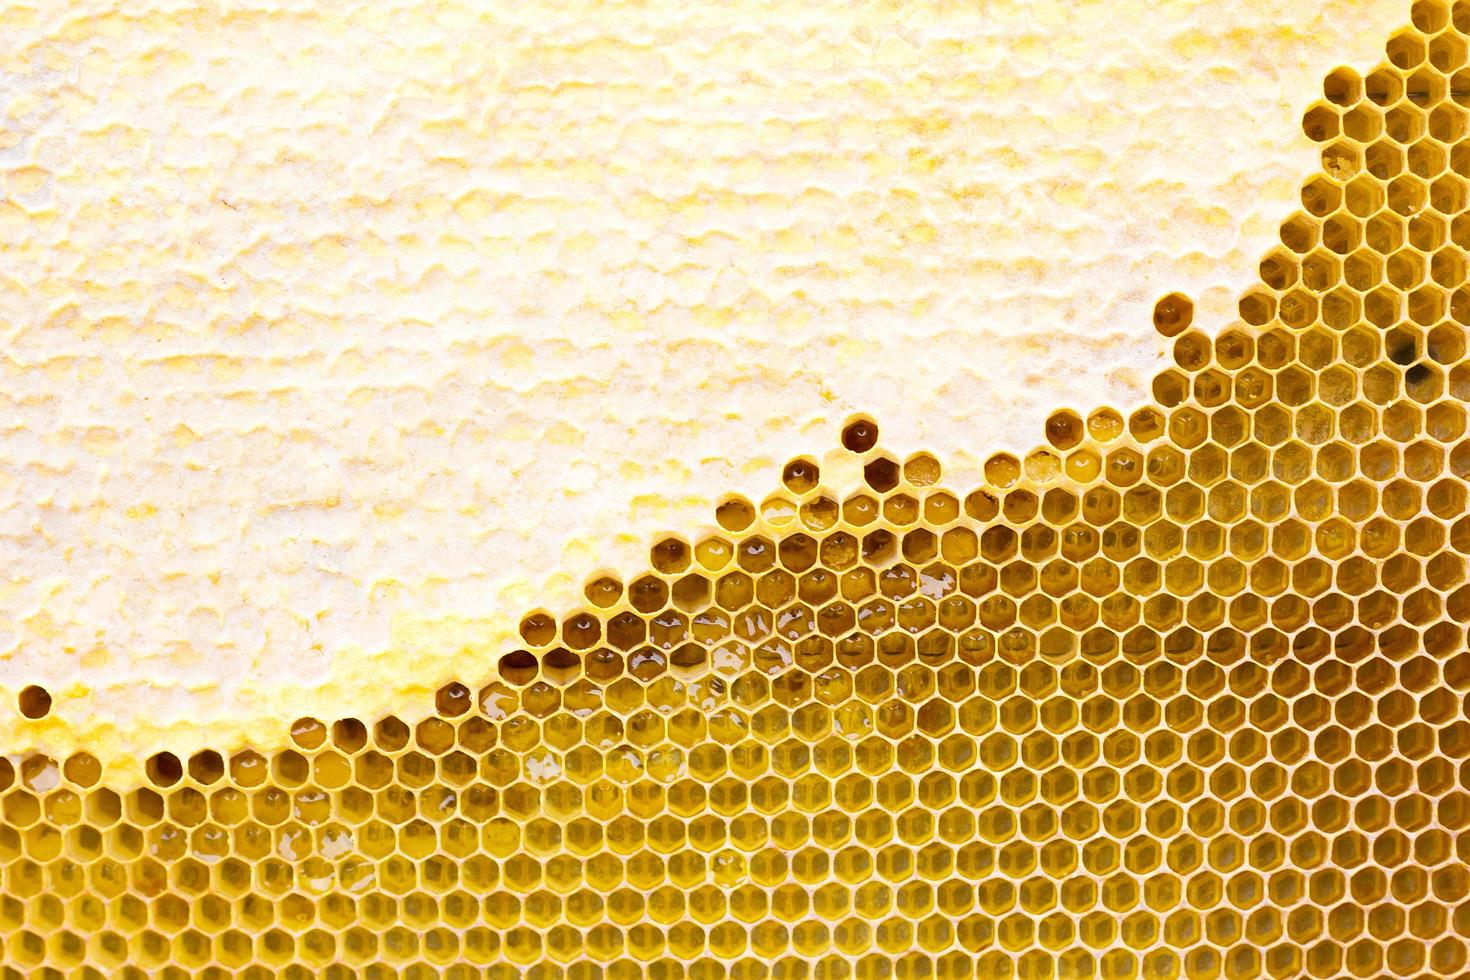 panal con textura de miel. . textura de fondo y dibujo de una sección de panal de cera de foto